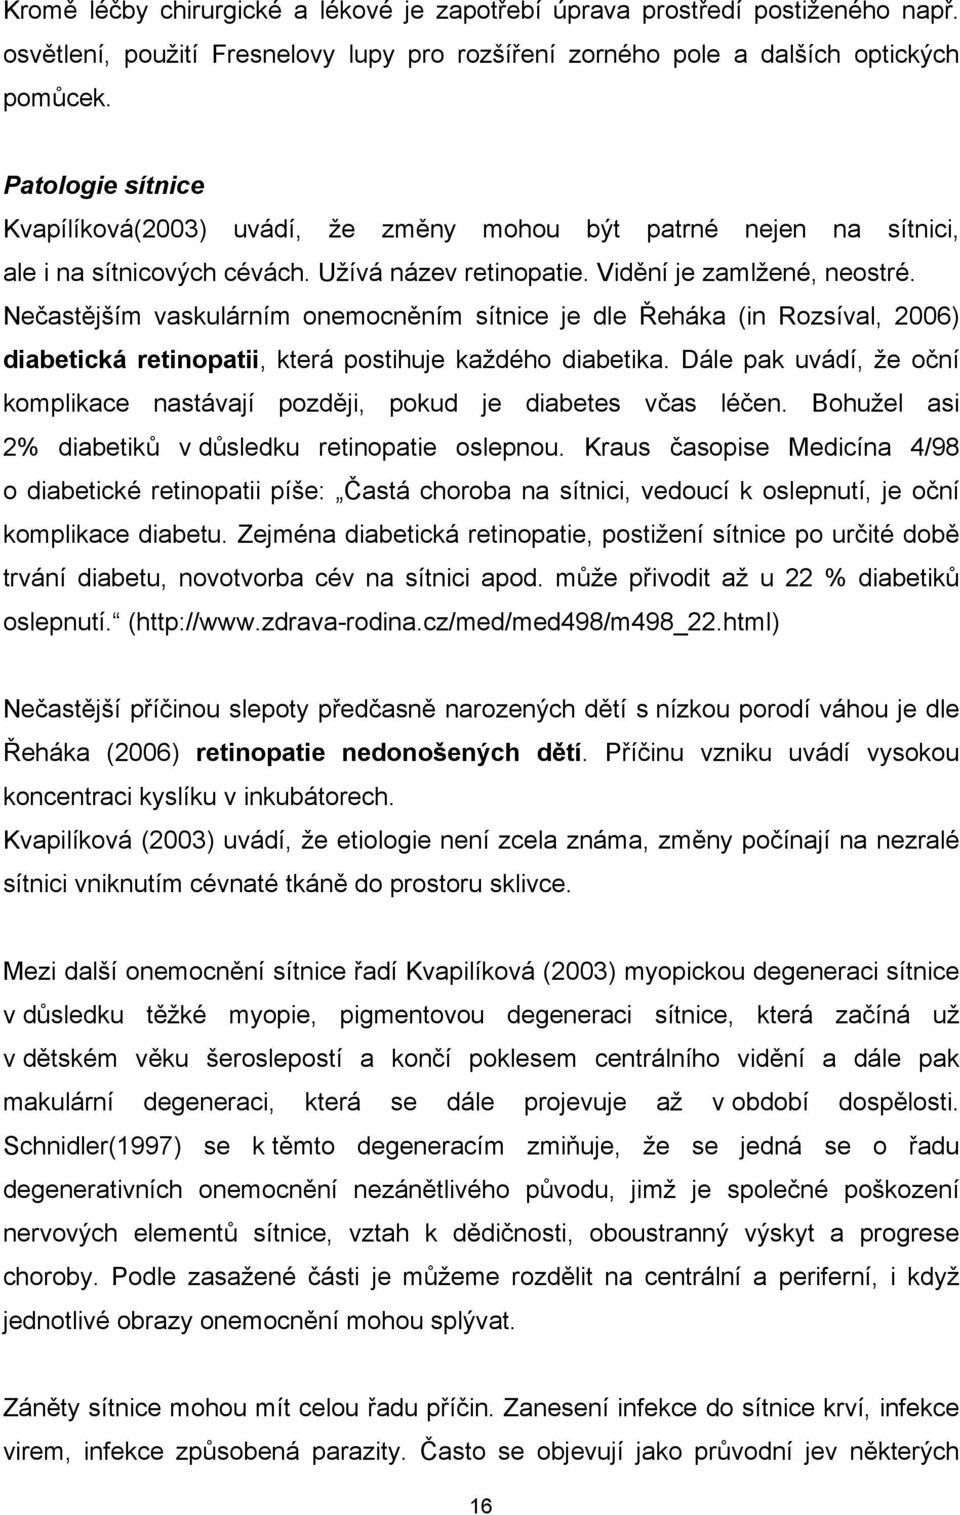 Nečastějším vaskulárním onemocněním sítnice je dle Řeháka (in Rozsíval, 2006) diabetická retinopatii, která postihuje každého diabetika.